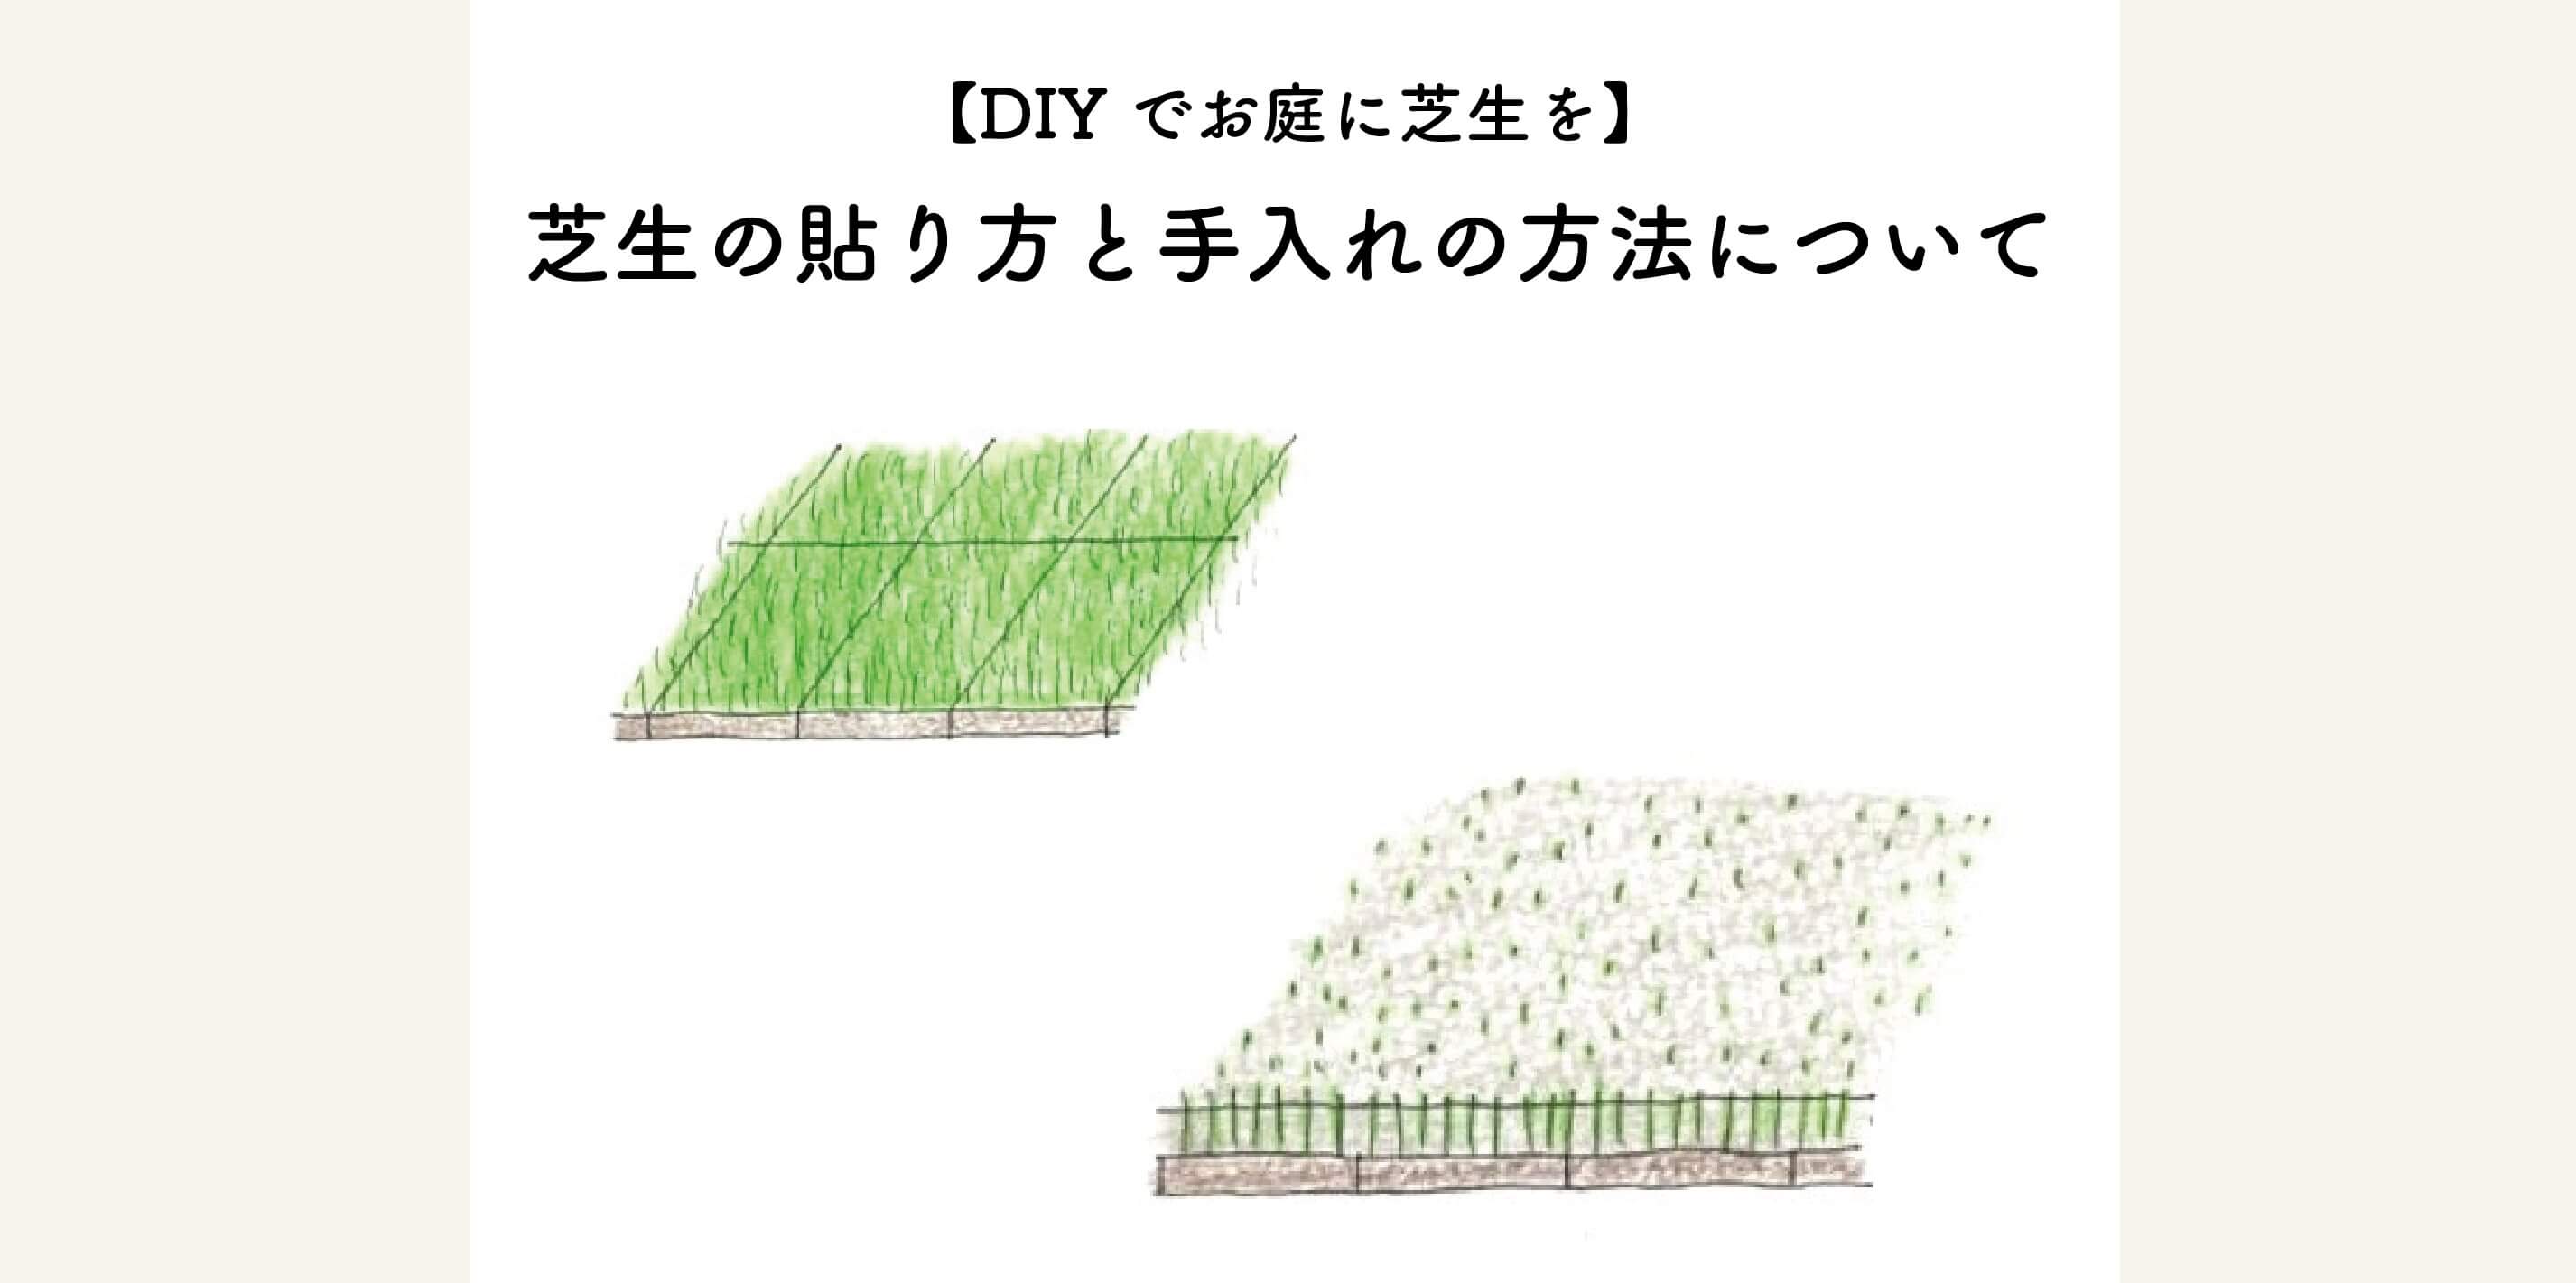 【DIYでお庭に芝生を】芝生の張り方と手入れの方法について